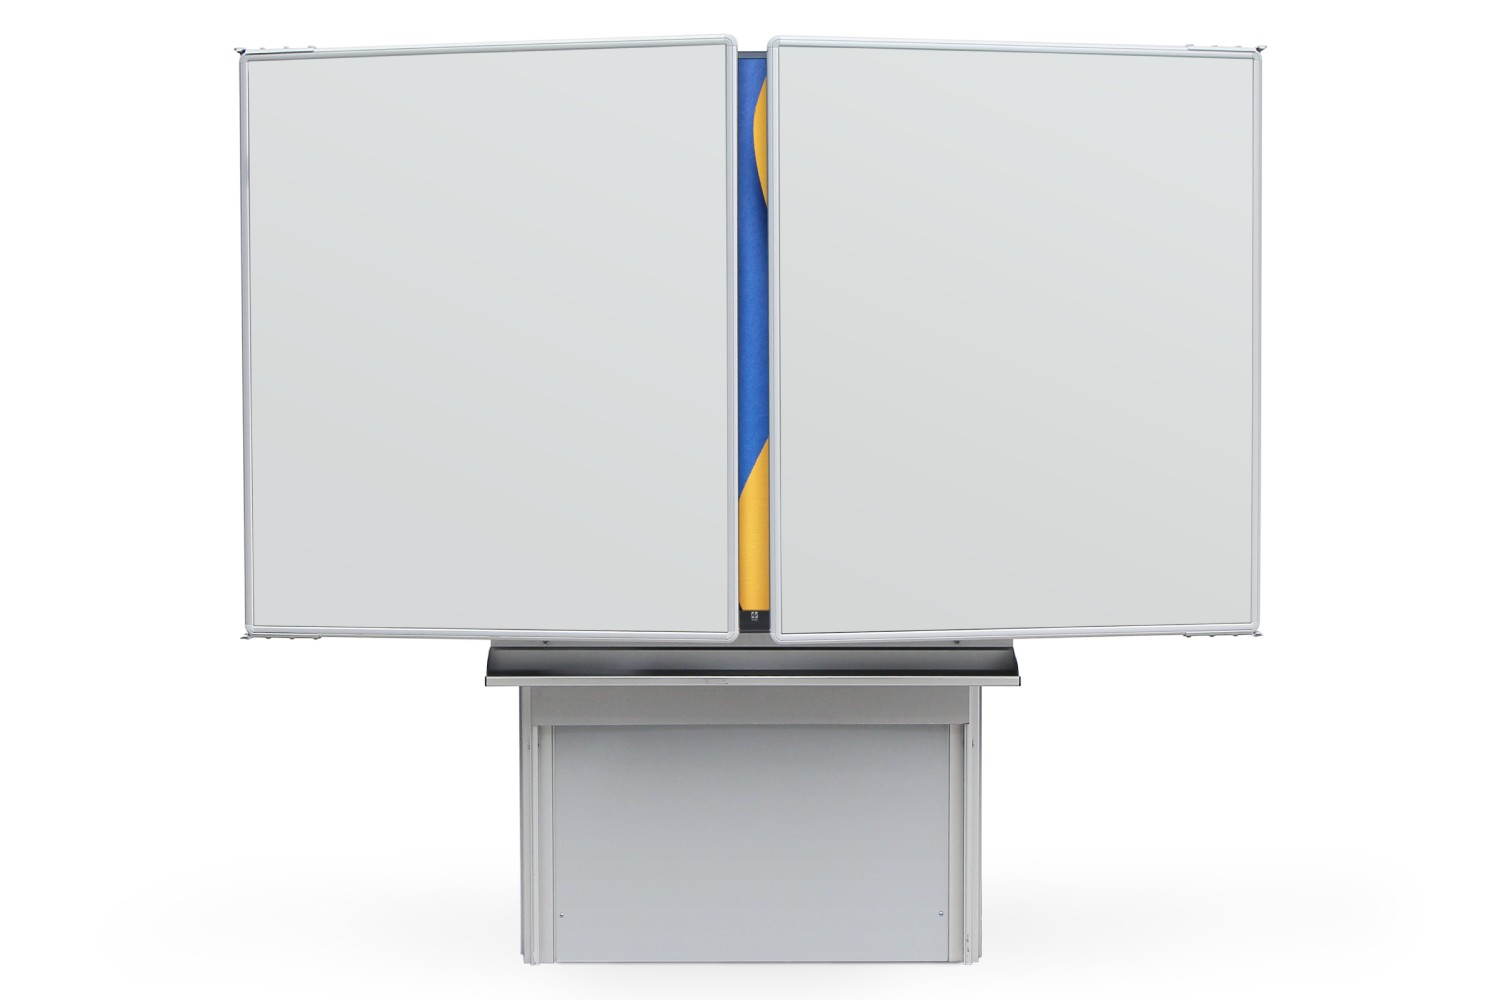 Interaktivní sestava LCD panel na STOJANU ZVEDACÍM AL IAS s křídly Interaktivní sestava na Stojanu zvedacím AL IAS - LCD 75